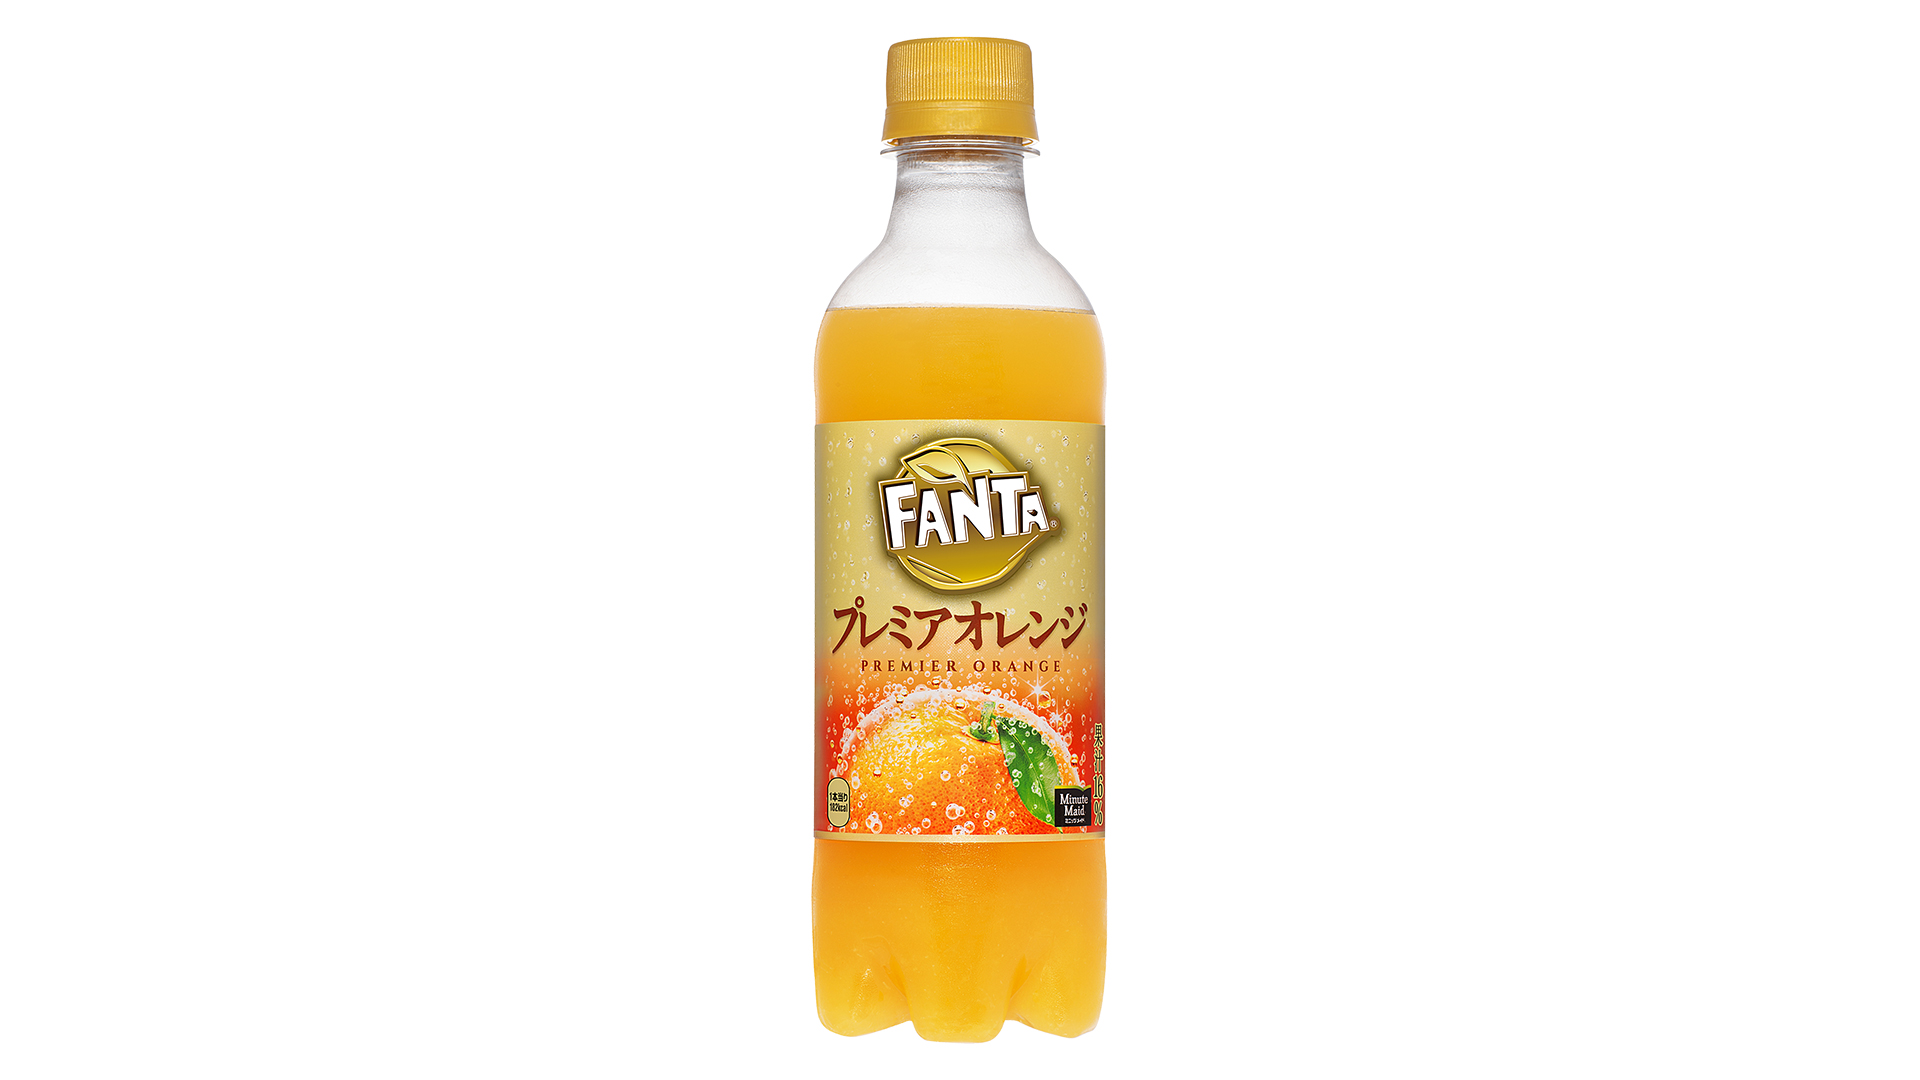 コカ・コーラ『ファンタ プレミアオレンジ』